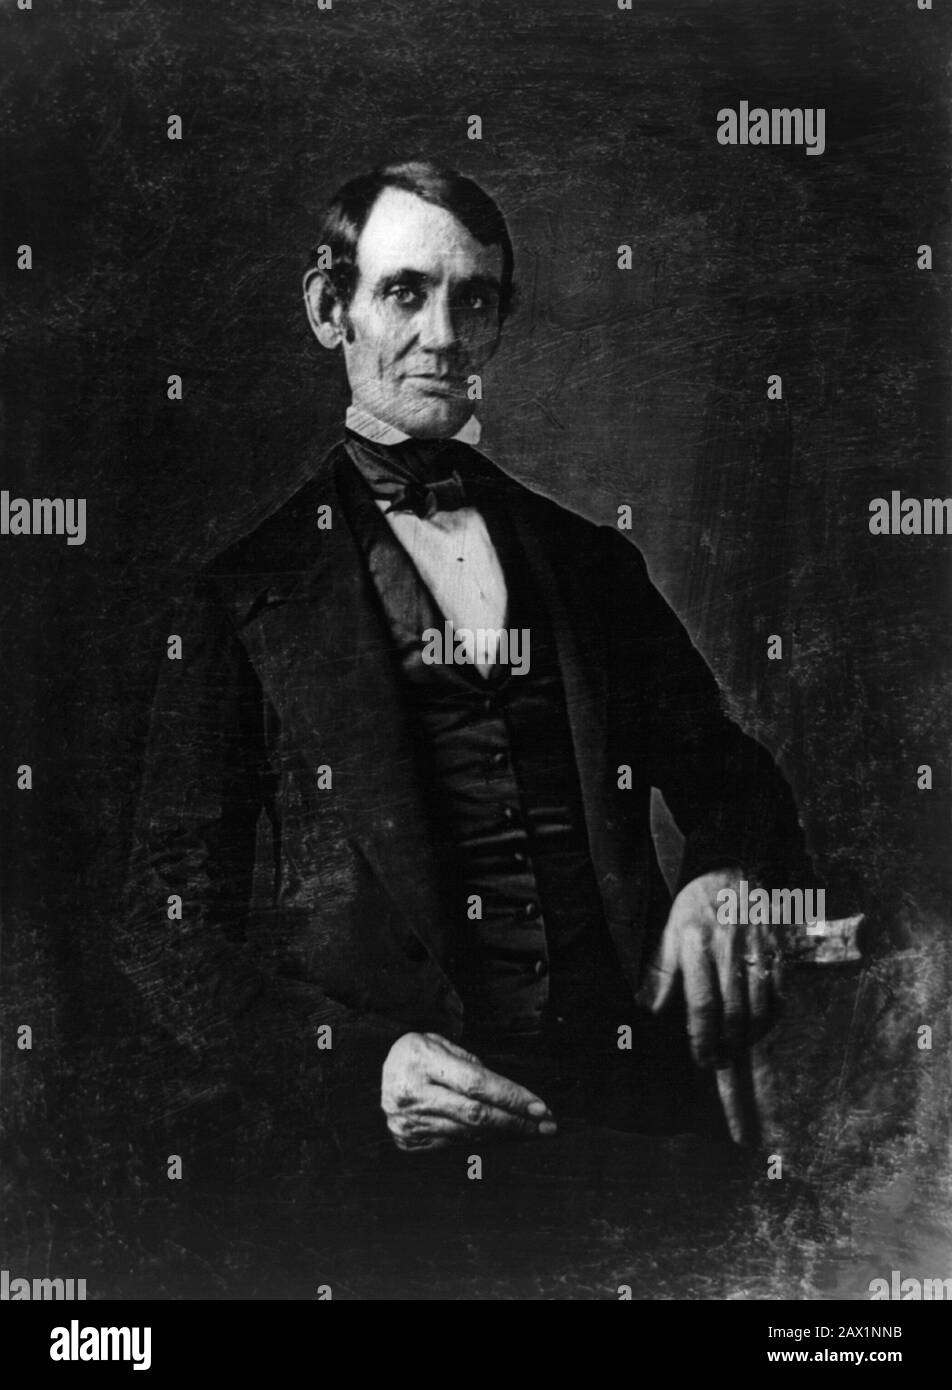 Der zukünftige Präsident der Vereinigten Staaten, ABRAHAM LINCOLN (* 1809; † 1865), war der aus Illinois gewählte Kongressabgeordnete. Foto Daguerreotyp von Nicholas H. Shepherd . Er wurde Nicholas H. Shepherd zugeschrieben, basierend auf den Erinnerungen von Gibson W. Harris, einem Jura-Studenten in Lincoln's Büro von den Jahren von 1845 bis 1848. Dieser Daguerreotyp ist das frühestbekannte Foto von Abraham Lincoln, das im Alter von 37 Jahren aufgenommen wurde, als er Grenzanwalt in Springfield und Kongressabgeordneter aus Illinois war. - Presidente della Repubblica - Stati Uniti - dagherrotipo - USA - ritratto - Portrait - Cravatta - Krawatte - papillon - Kragen Stockfoto